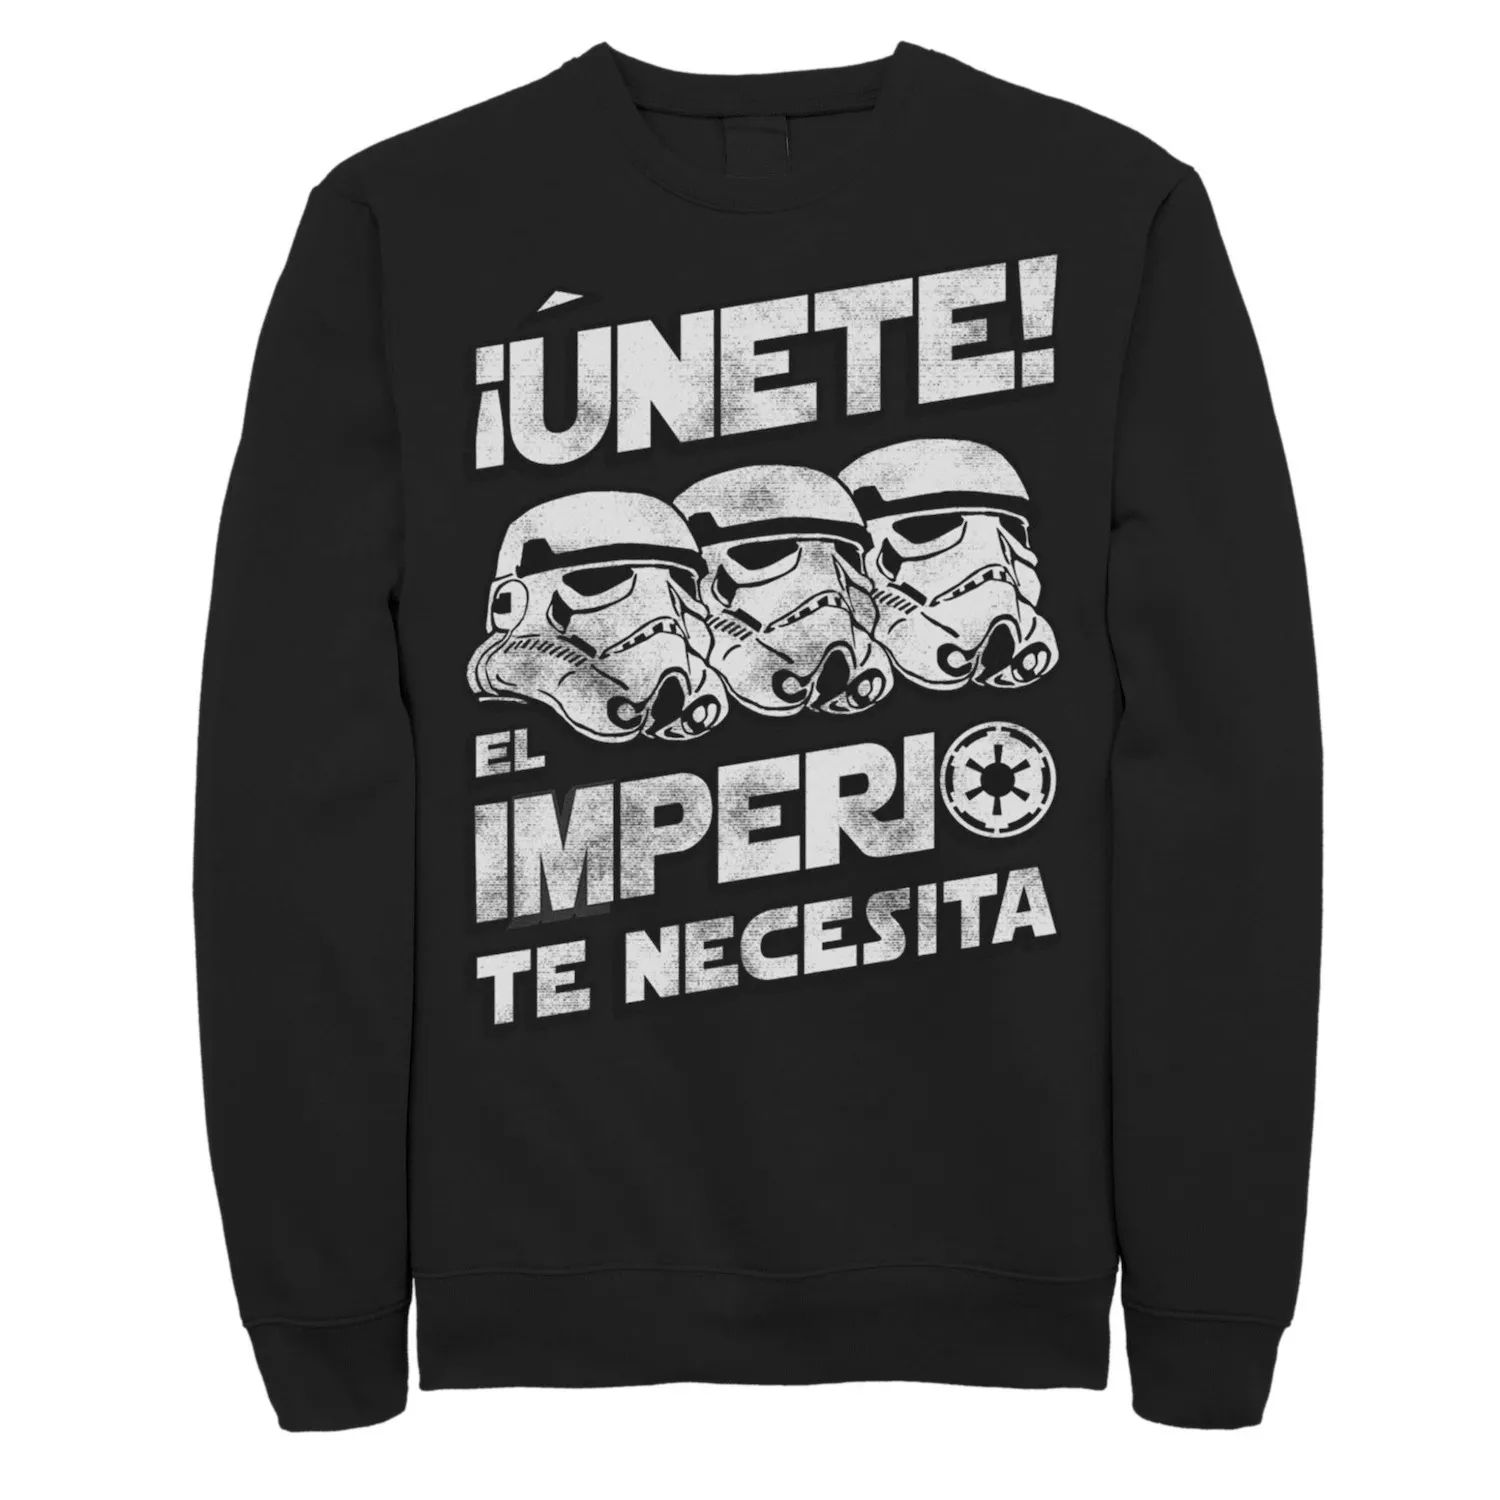 Мужской свитшот с выцветшим портретом «Звездные войны» Unete El Imperio Te Necesita Stormtrooper, Black Licensed Character, черный